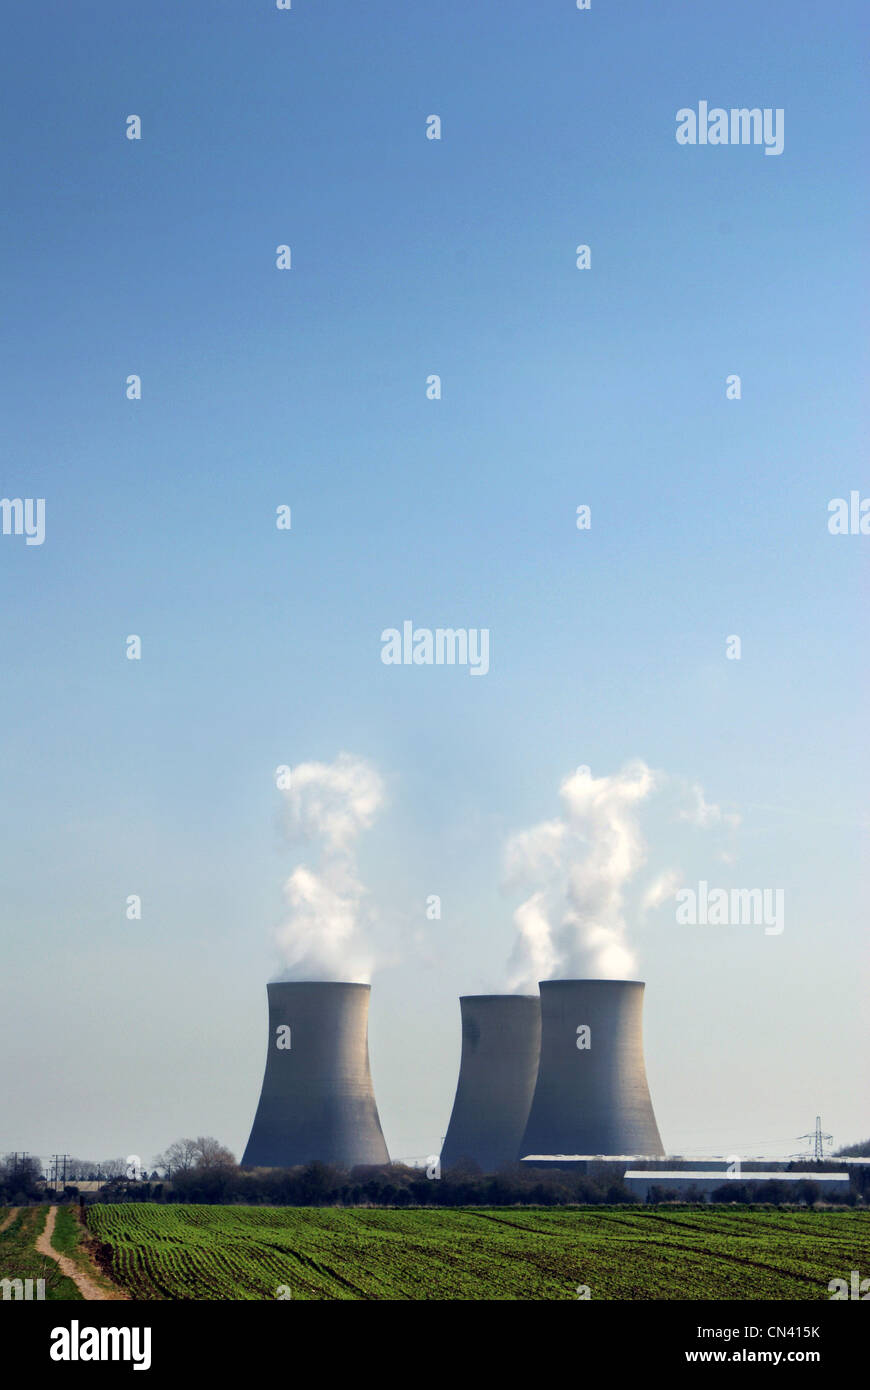 Tres torres de enfriamiento de ventilación de vapor de agua hacia el cielo azul, el campo vacío en primer plano, las plantas de energía nuclear. Foto de stock